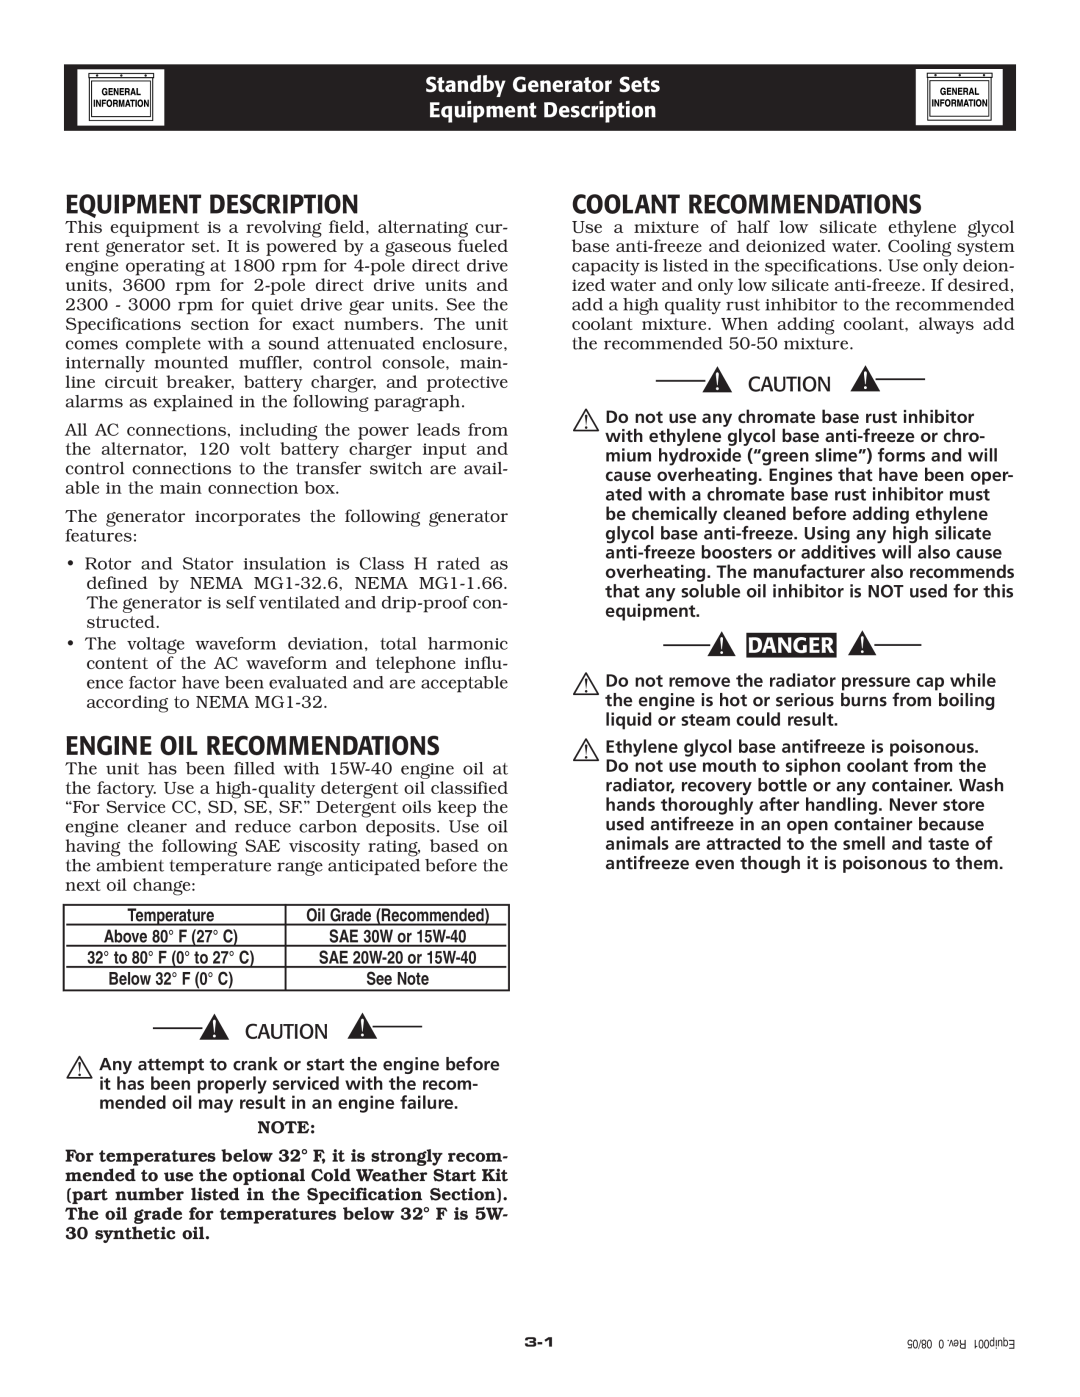 Elite 005212-0 owner manual Equipment Description, Engine Oil Recommendations, Coolant Recommendations, Danger 